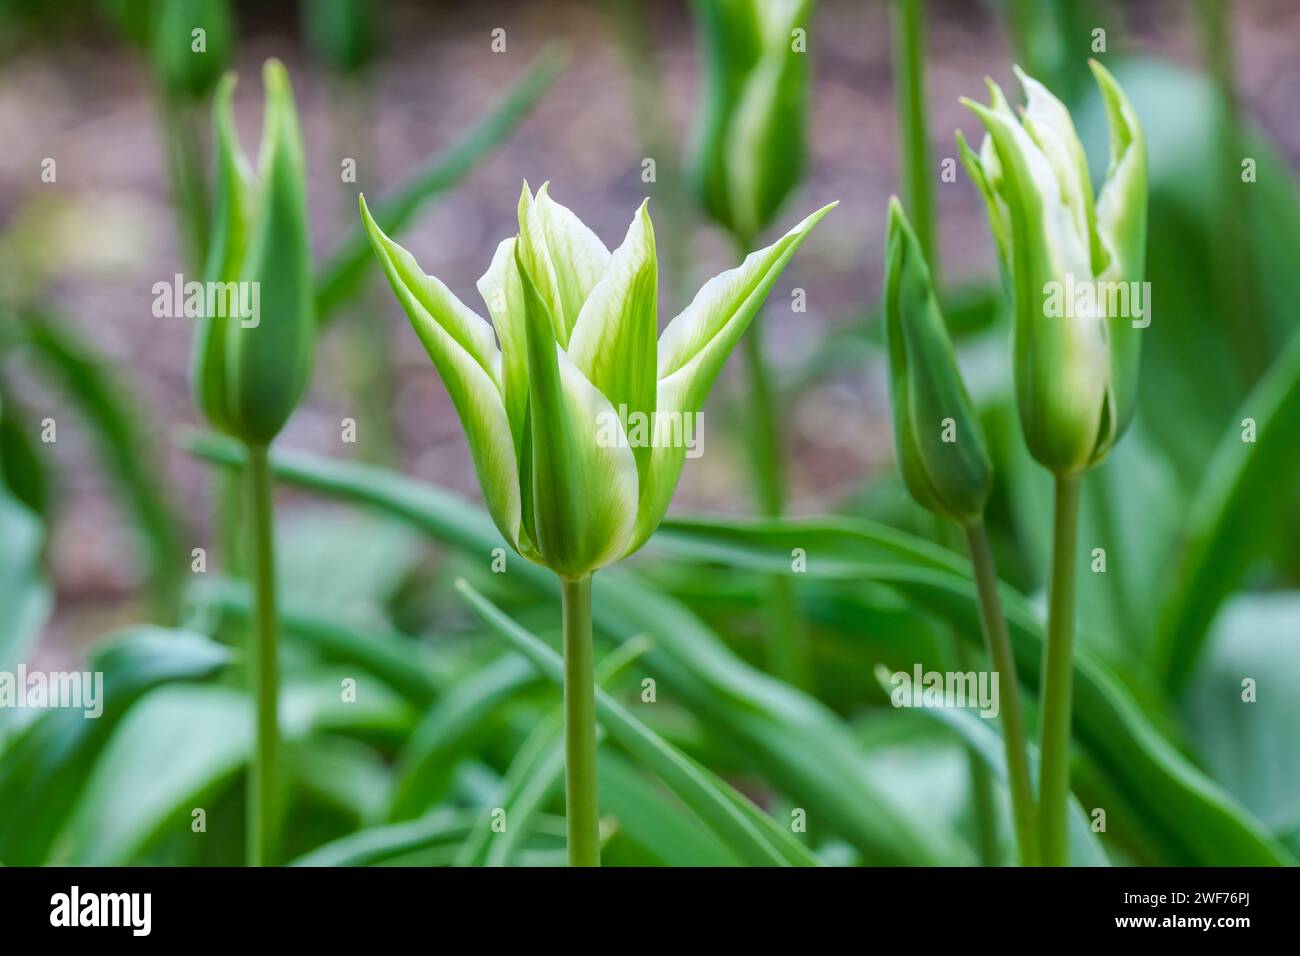 Tulip Green Star, Viridiflora Tulip, fiori simili a stelle con petali a strisce verdi e crema. Foto Stock